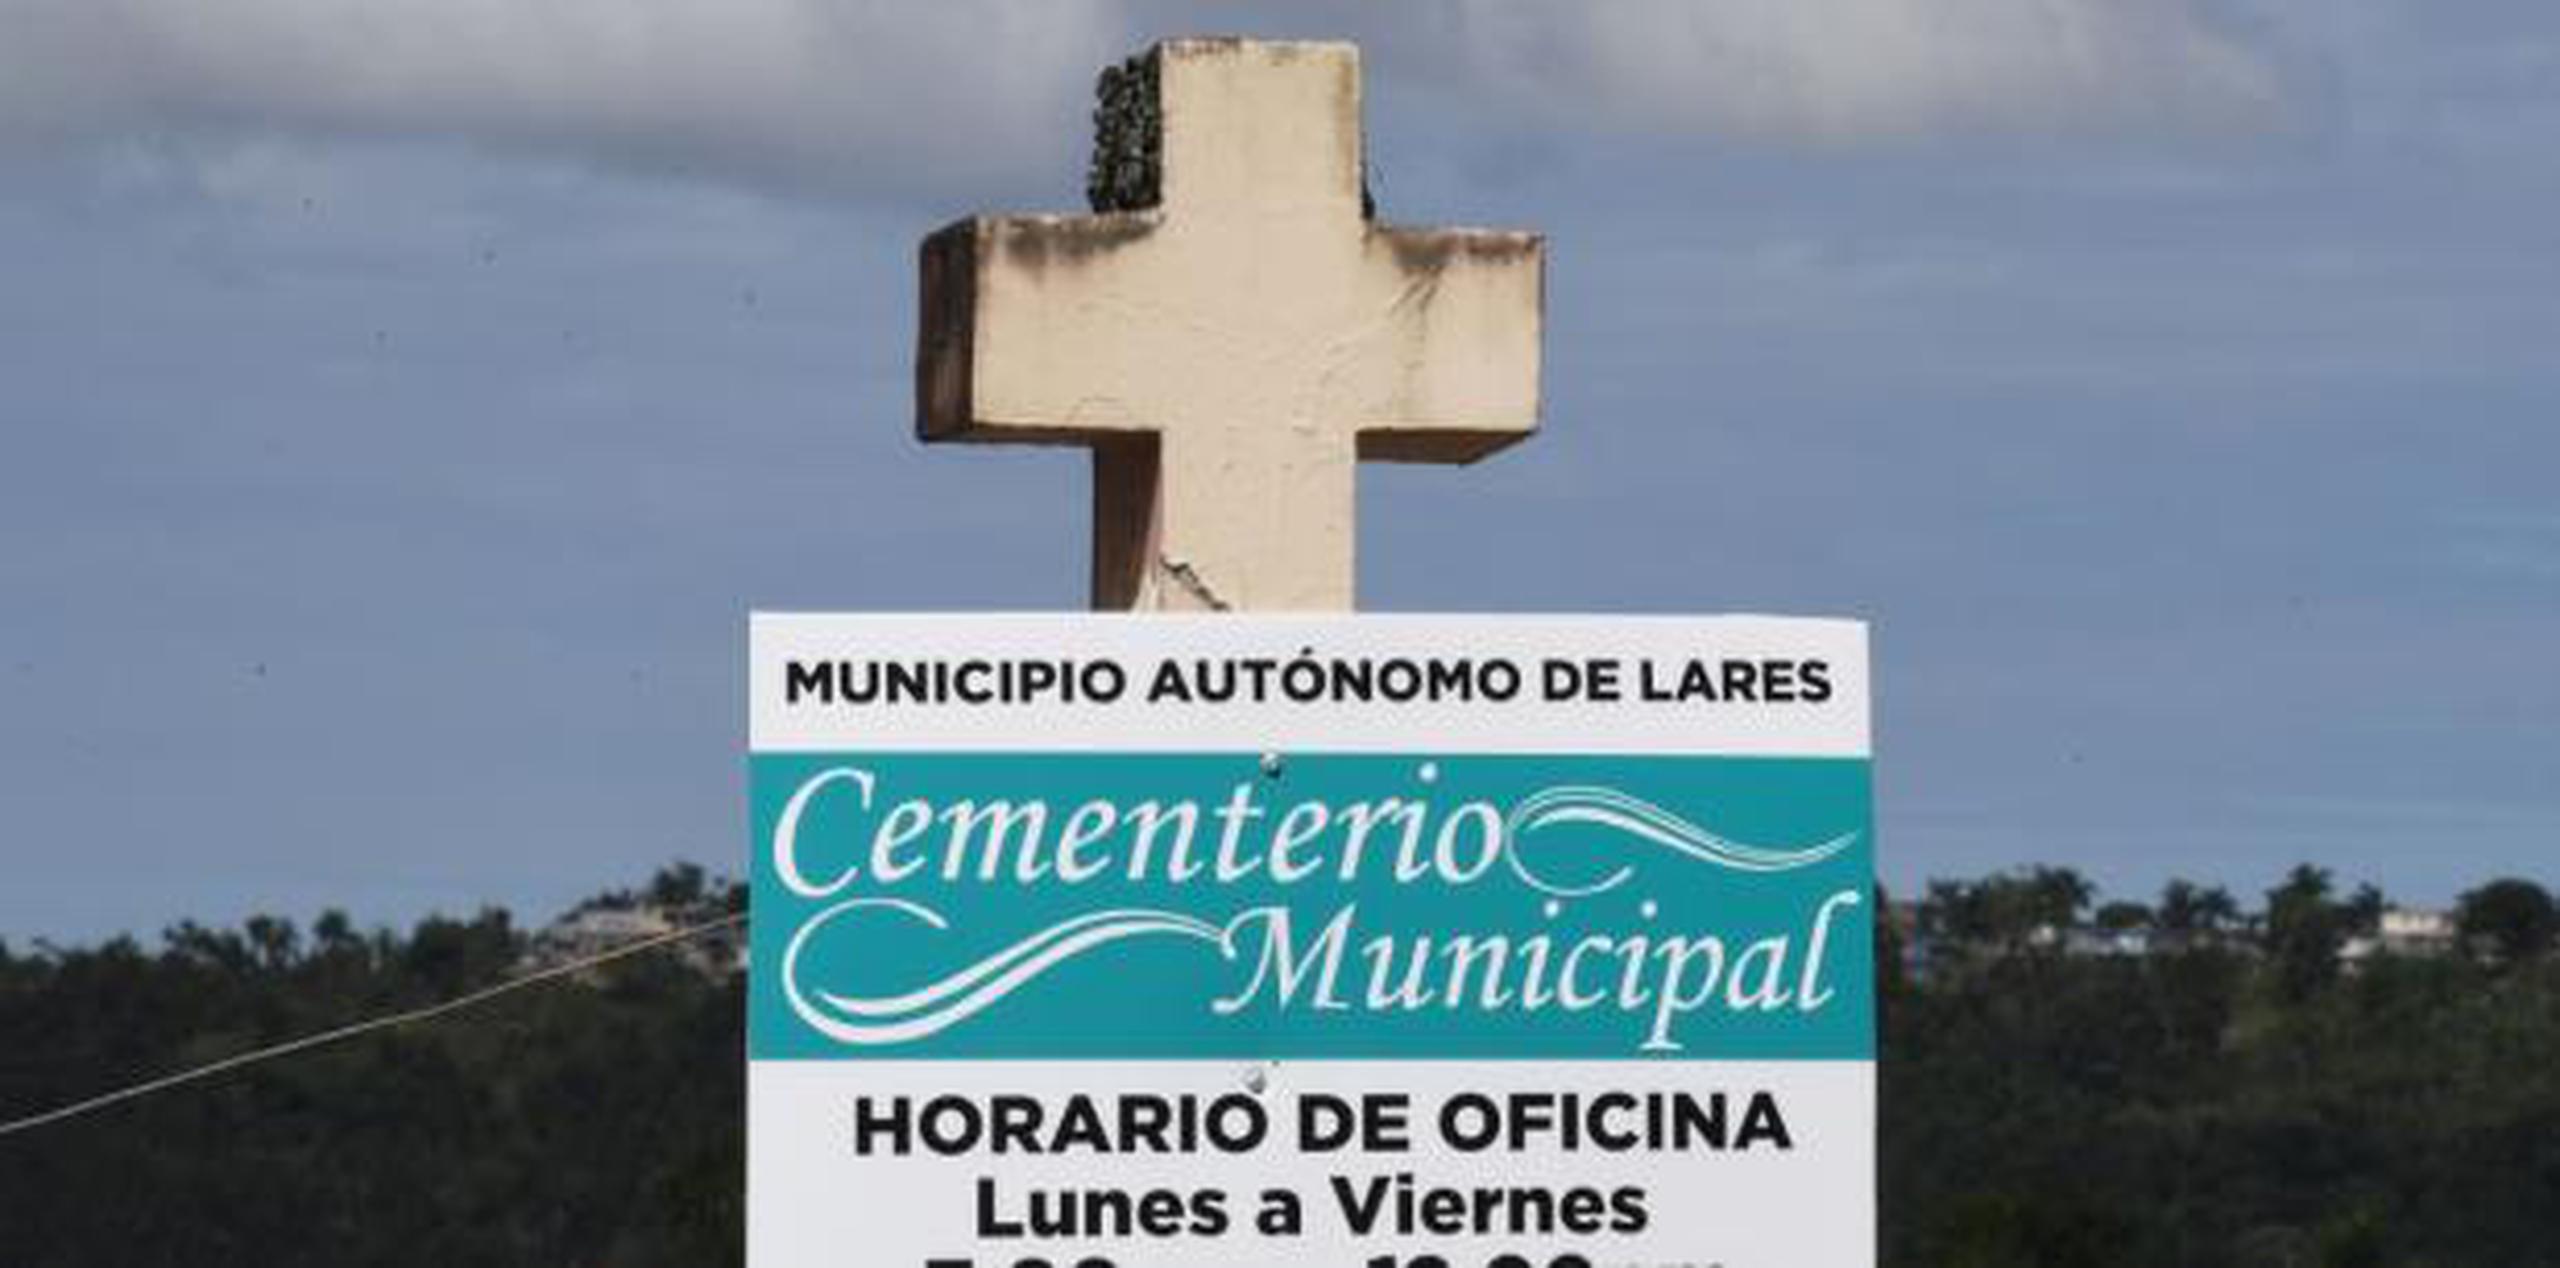 Pese a la decisión de Salud, el dueño de la funeraria López, Juan M. López Coloso, reveló que en el cementerio se continúan realizando entierros en unos nichos que quedan disponibles. (Archivo)